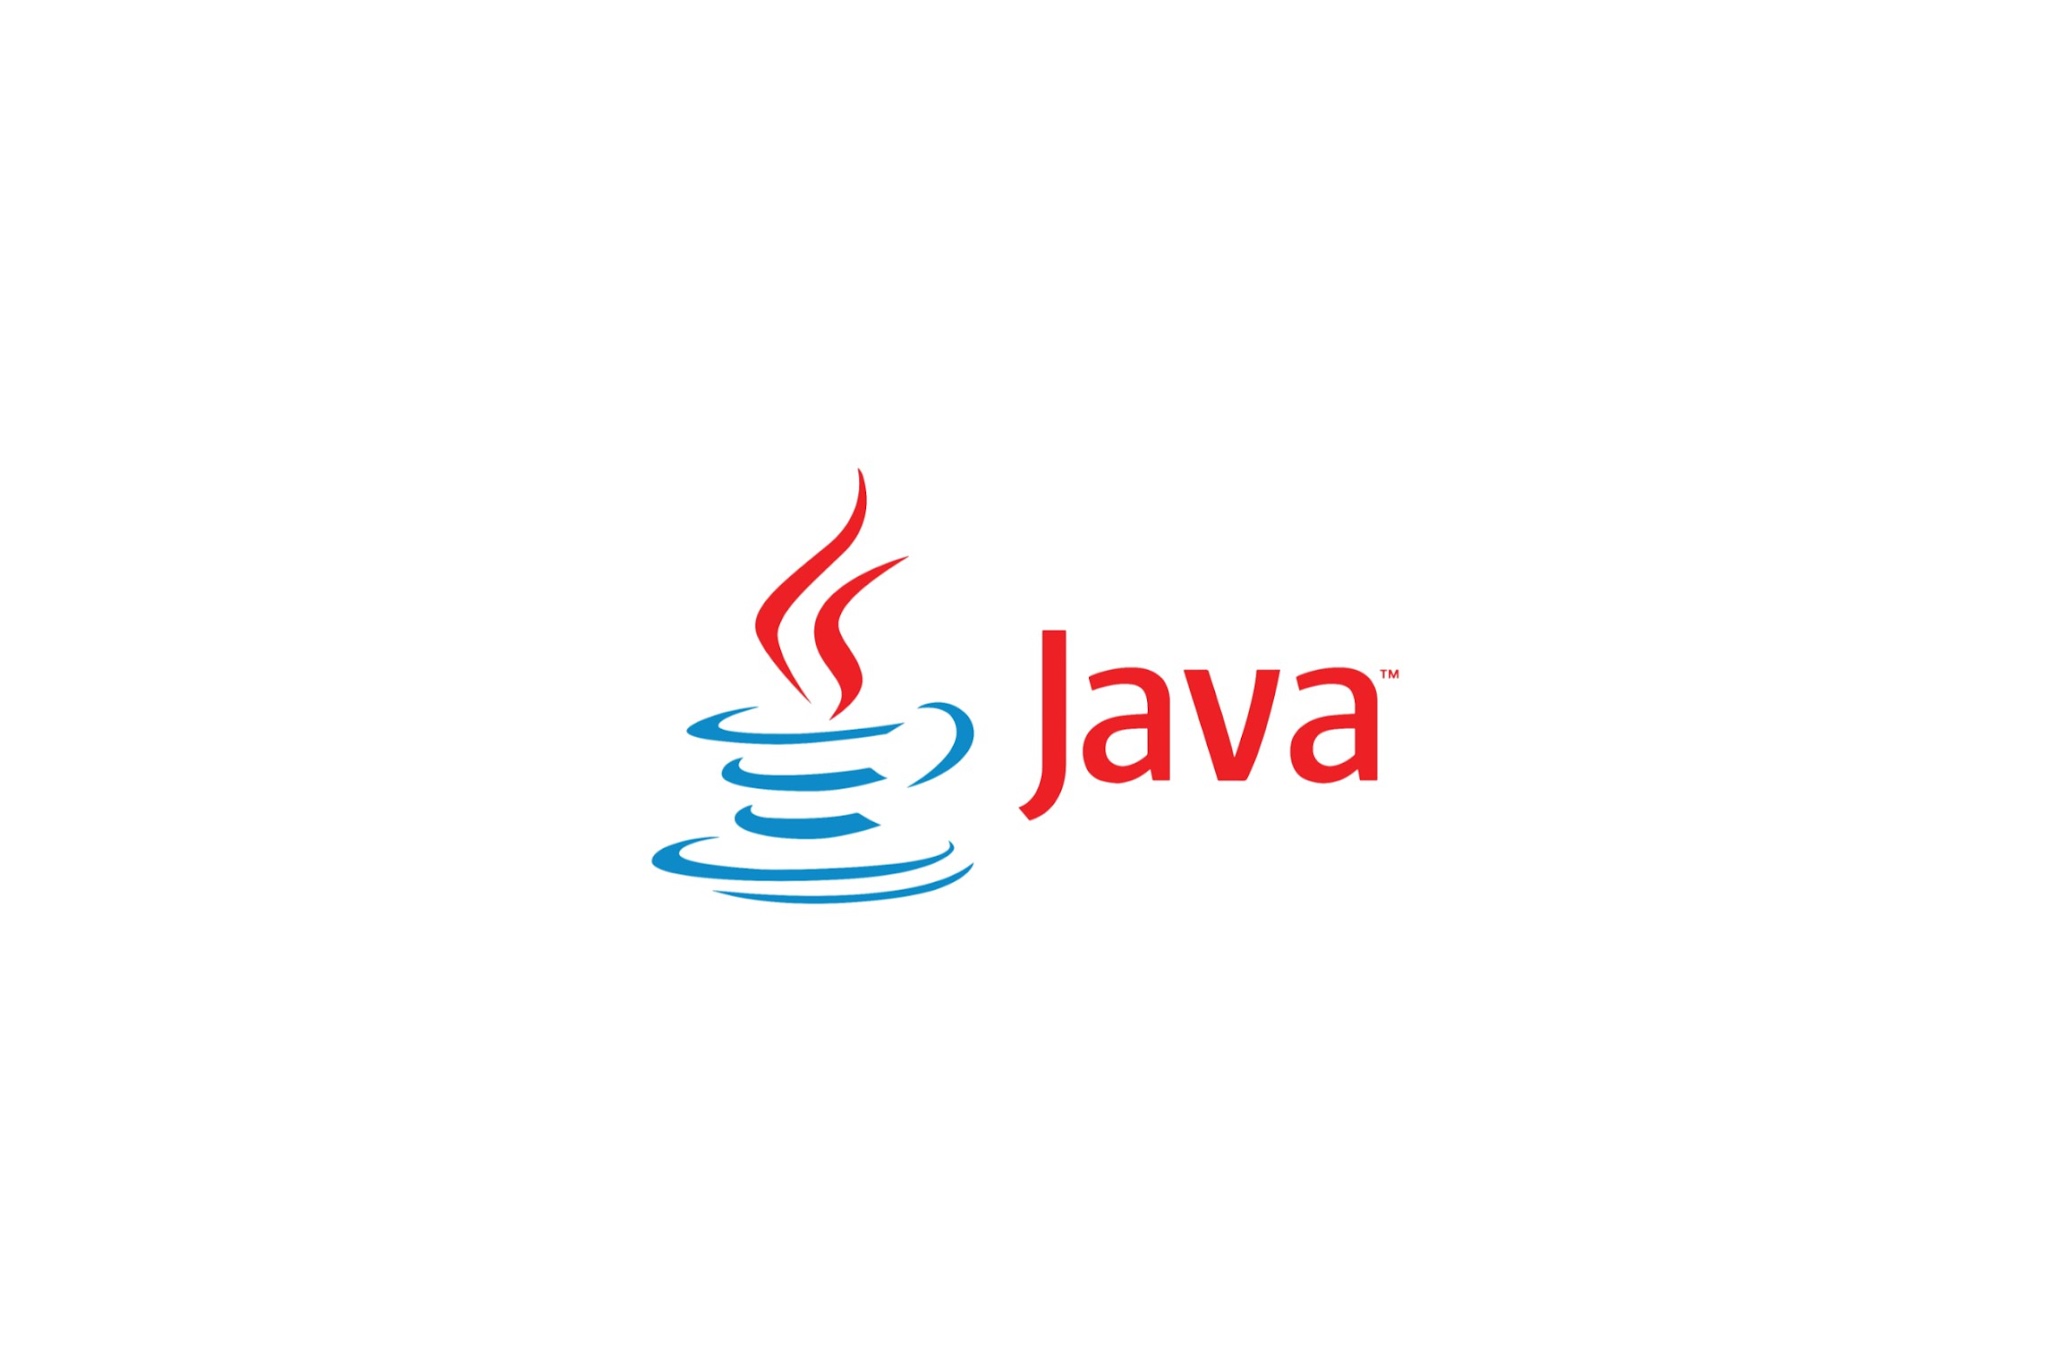 Джава 8. Значок java. Логотипы языков программирования java. Логотип языка java. Java язык программирования logo.